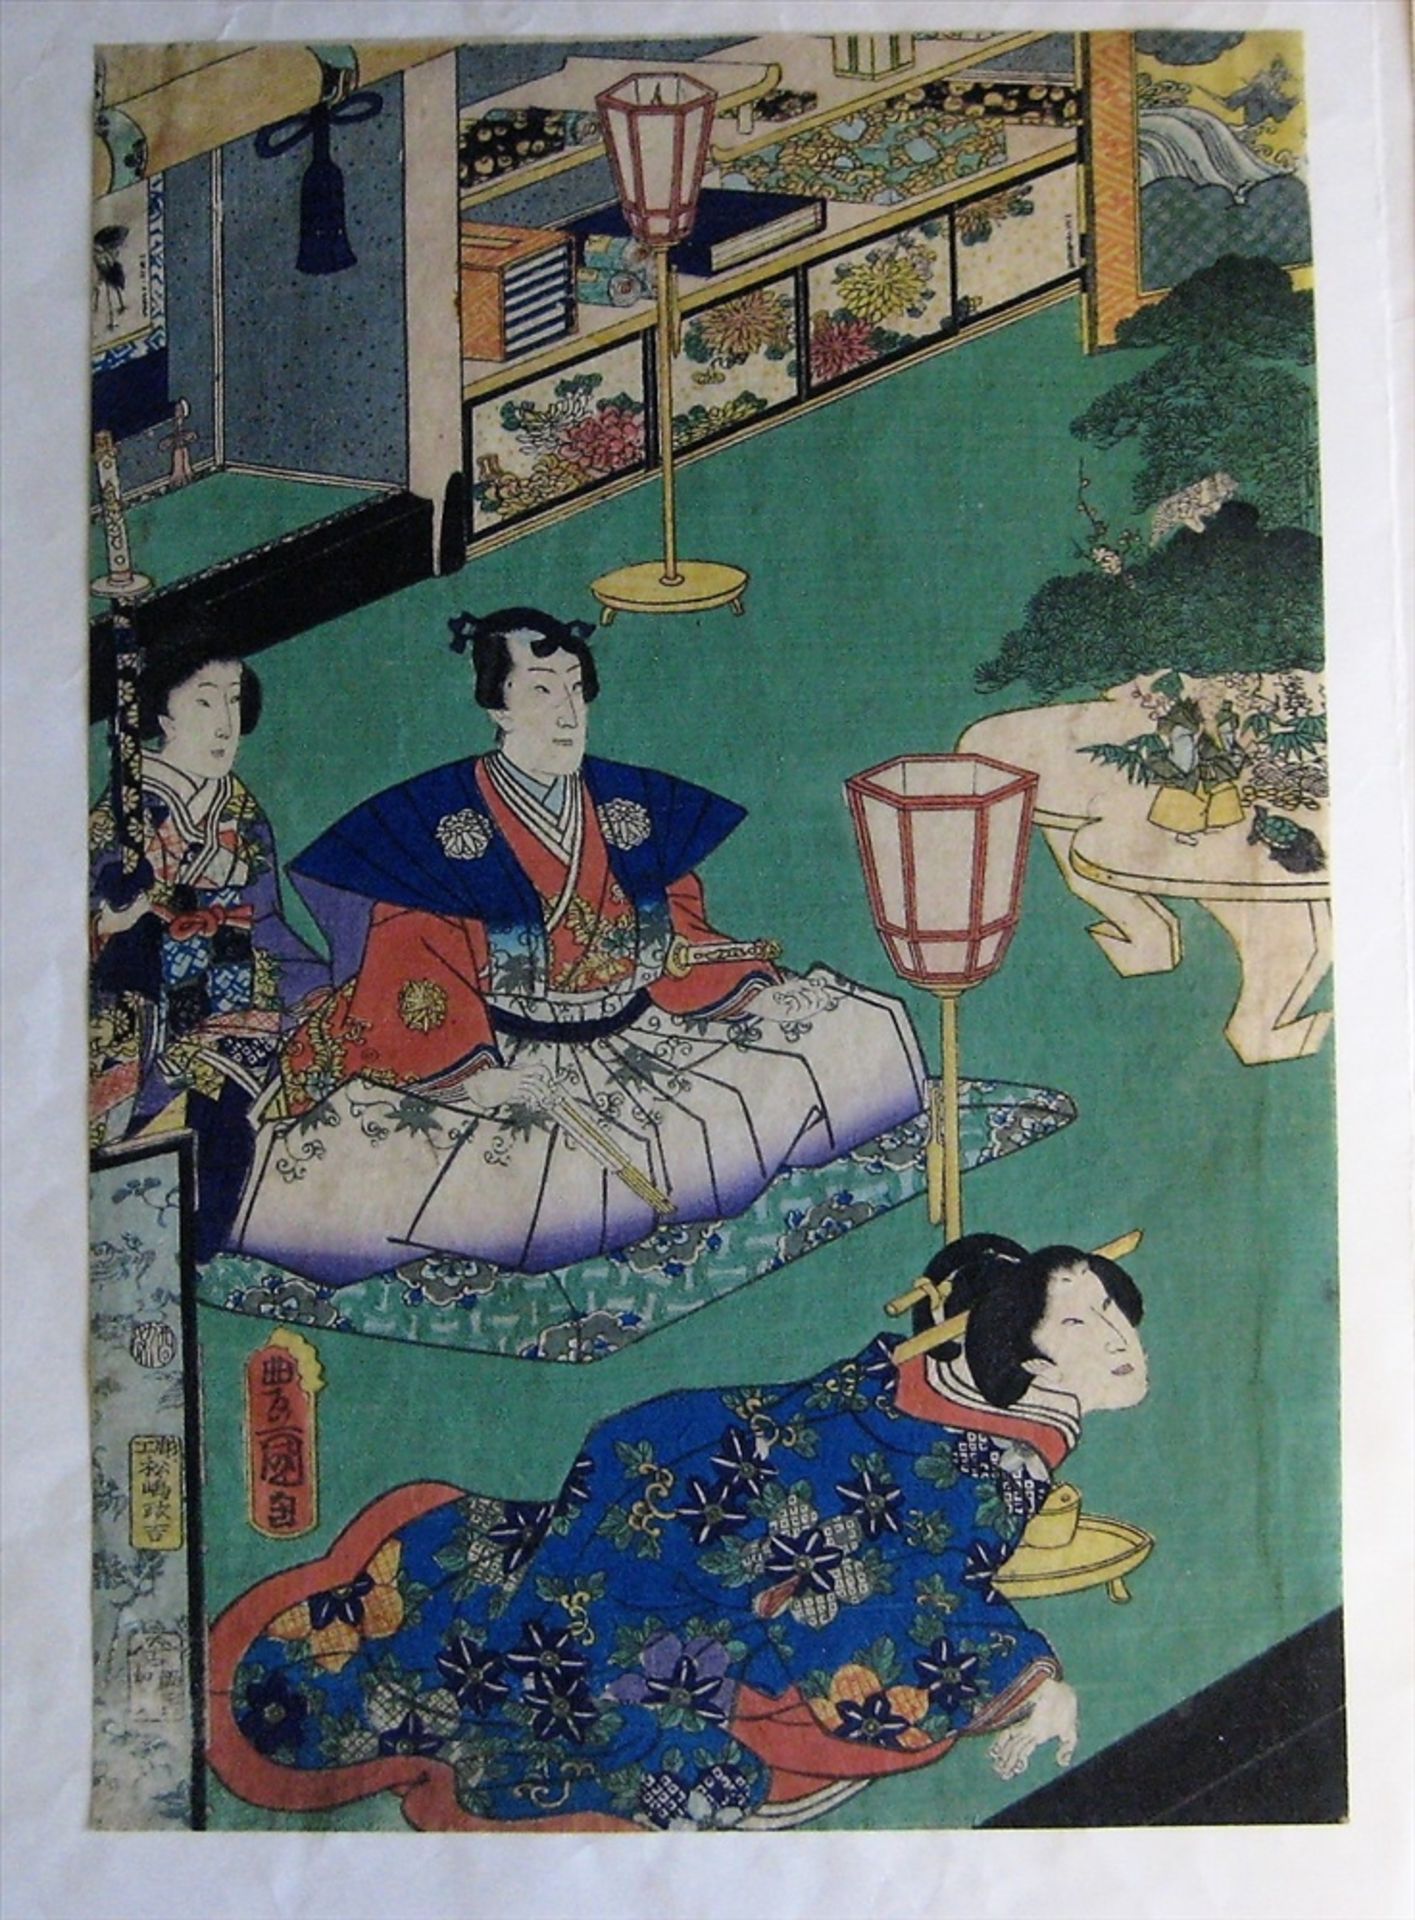 3 Farbholzschnitte, Japan, 19. Jahrhundert, Tryptichon, "Personen am Hof", sign., 35,5 x 24,5 cm, - Bild 2 aus 4